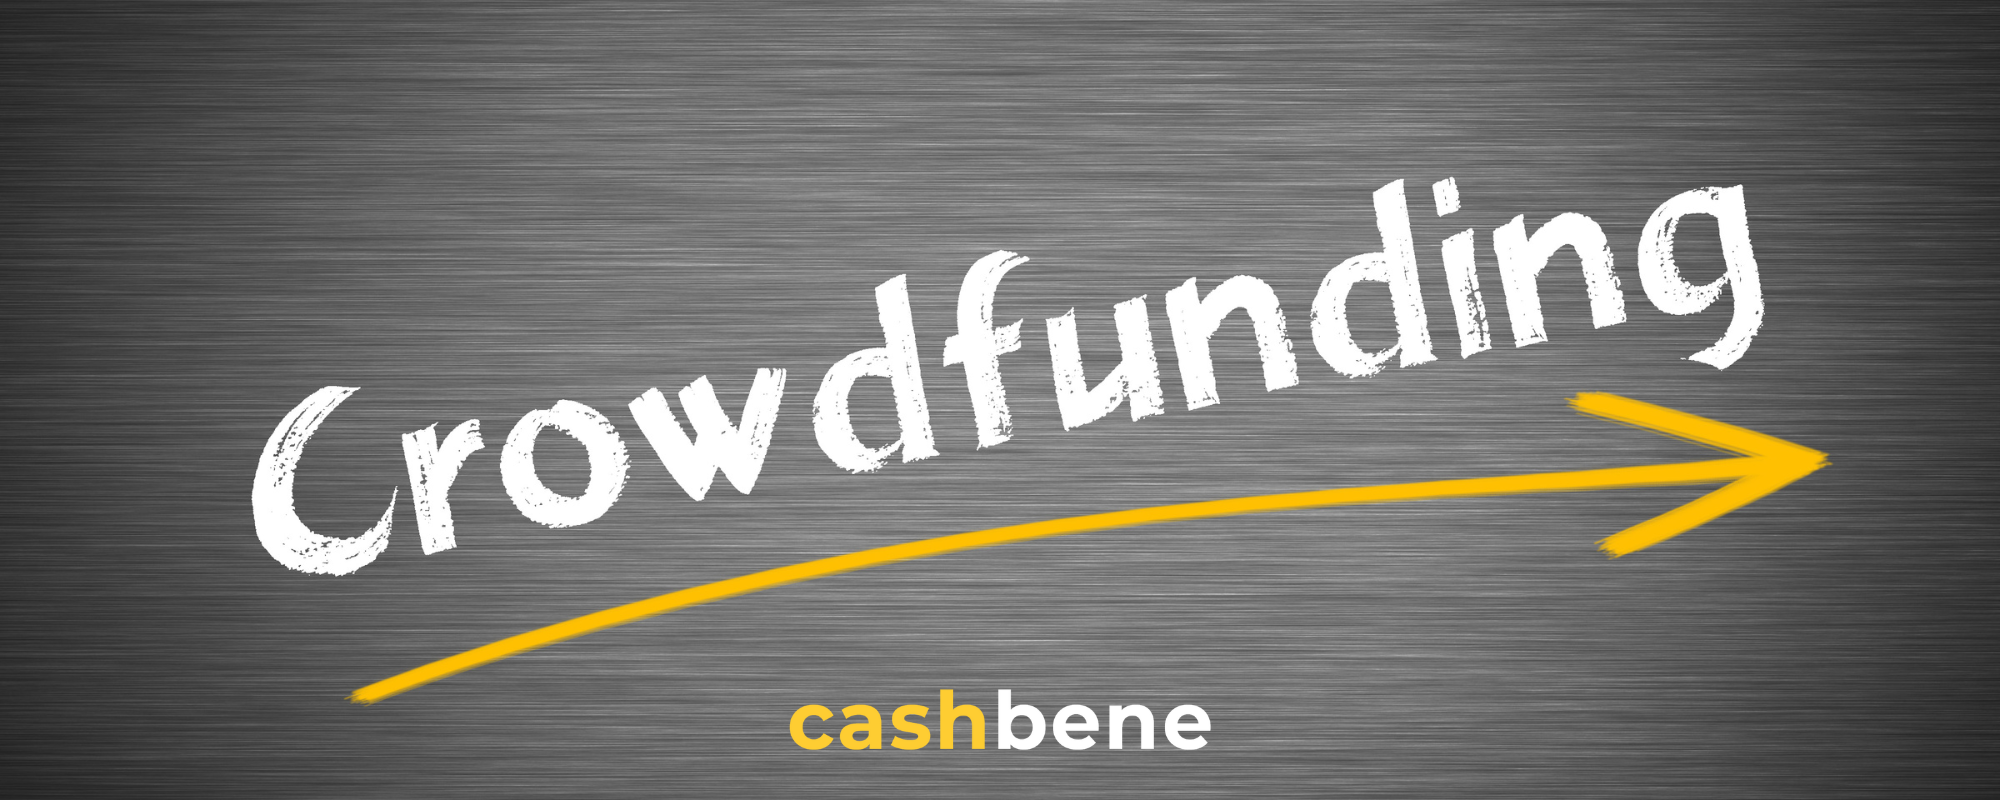 Crowdfunding jako alternatywna metoda finansowania. Czym jest i jak z tego korzystać.